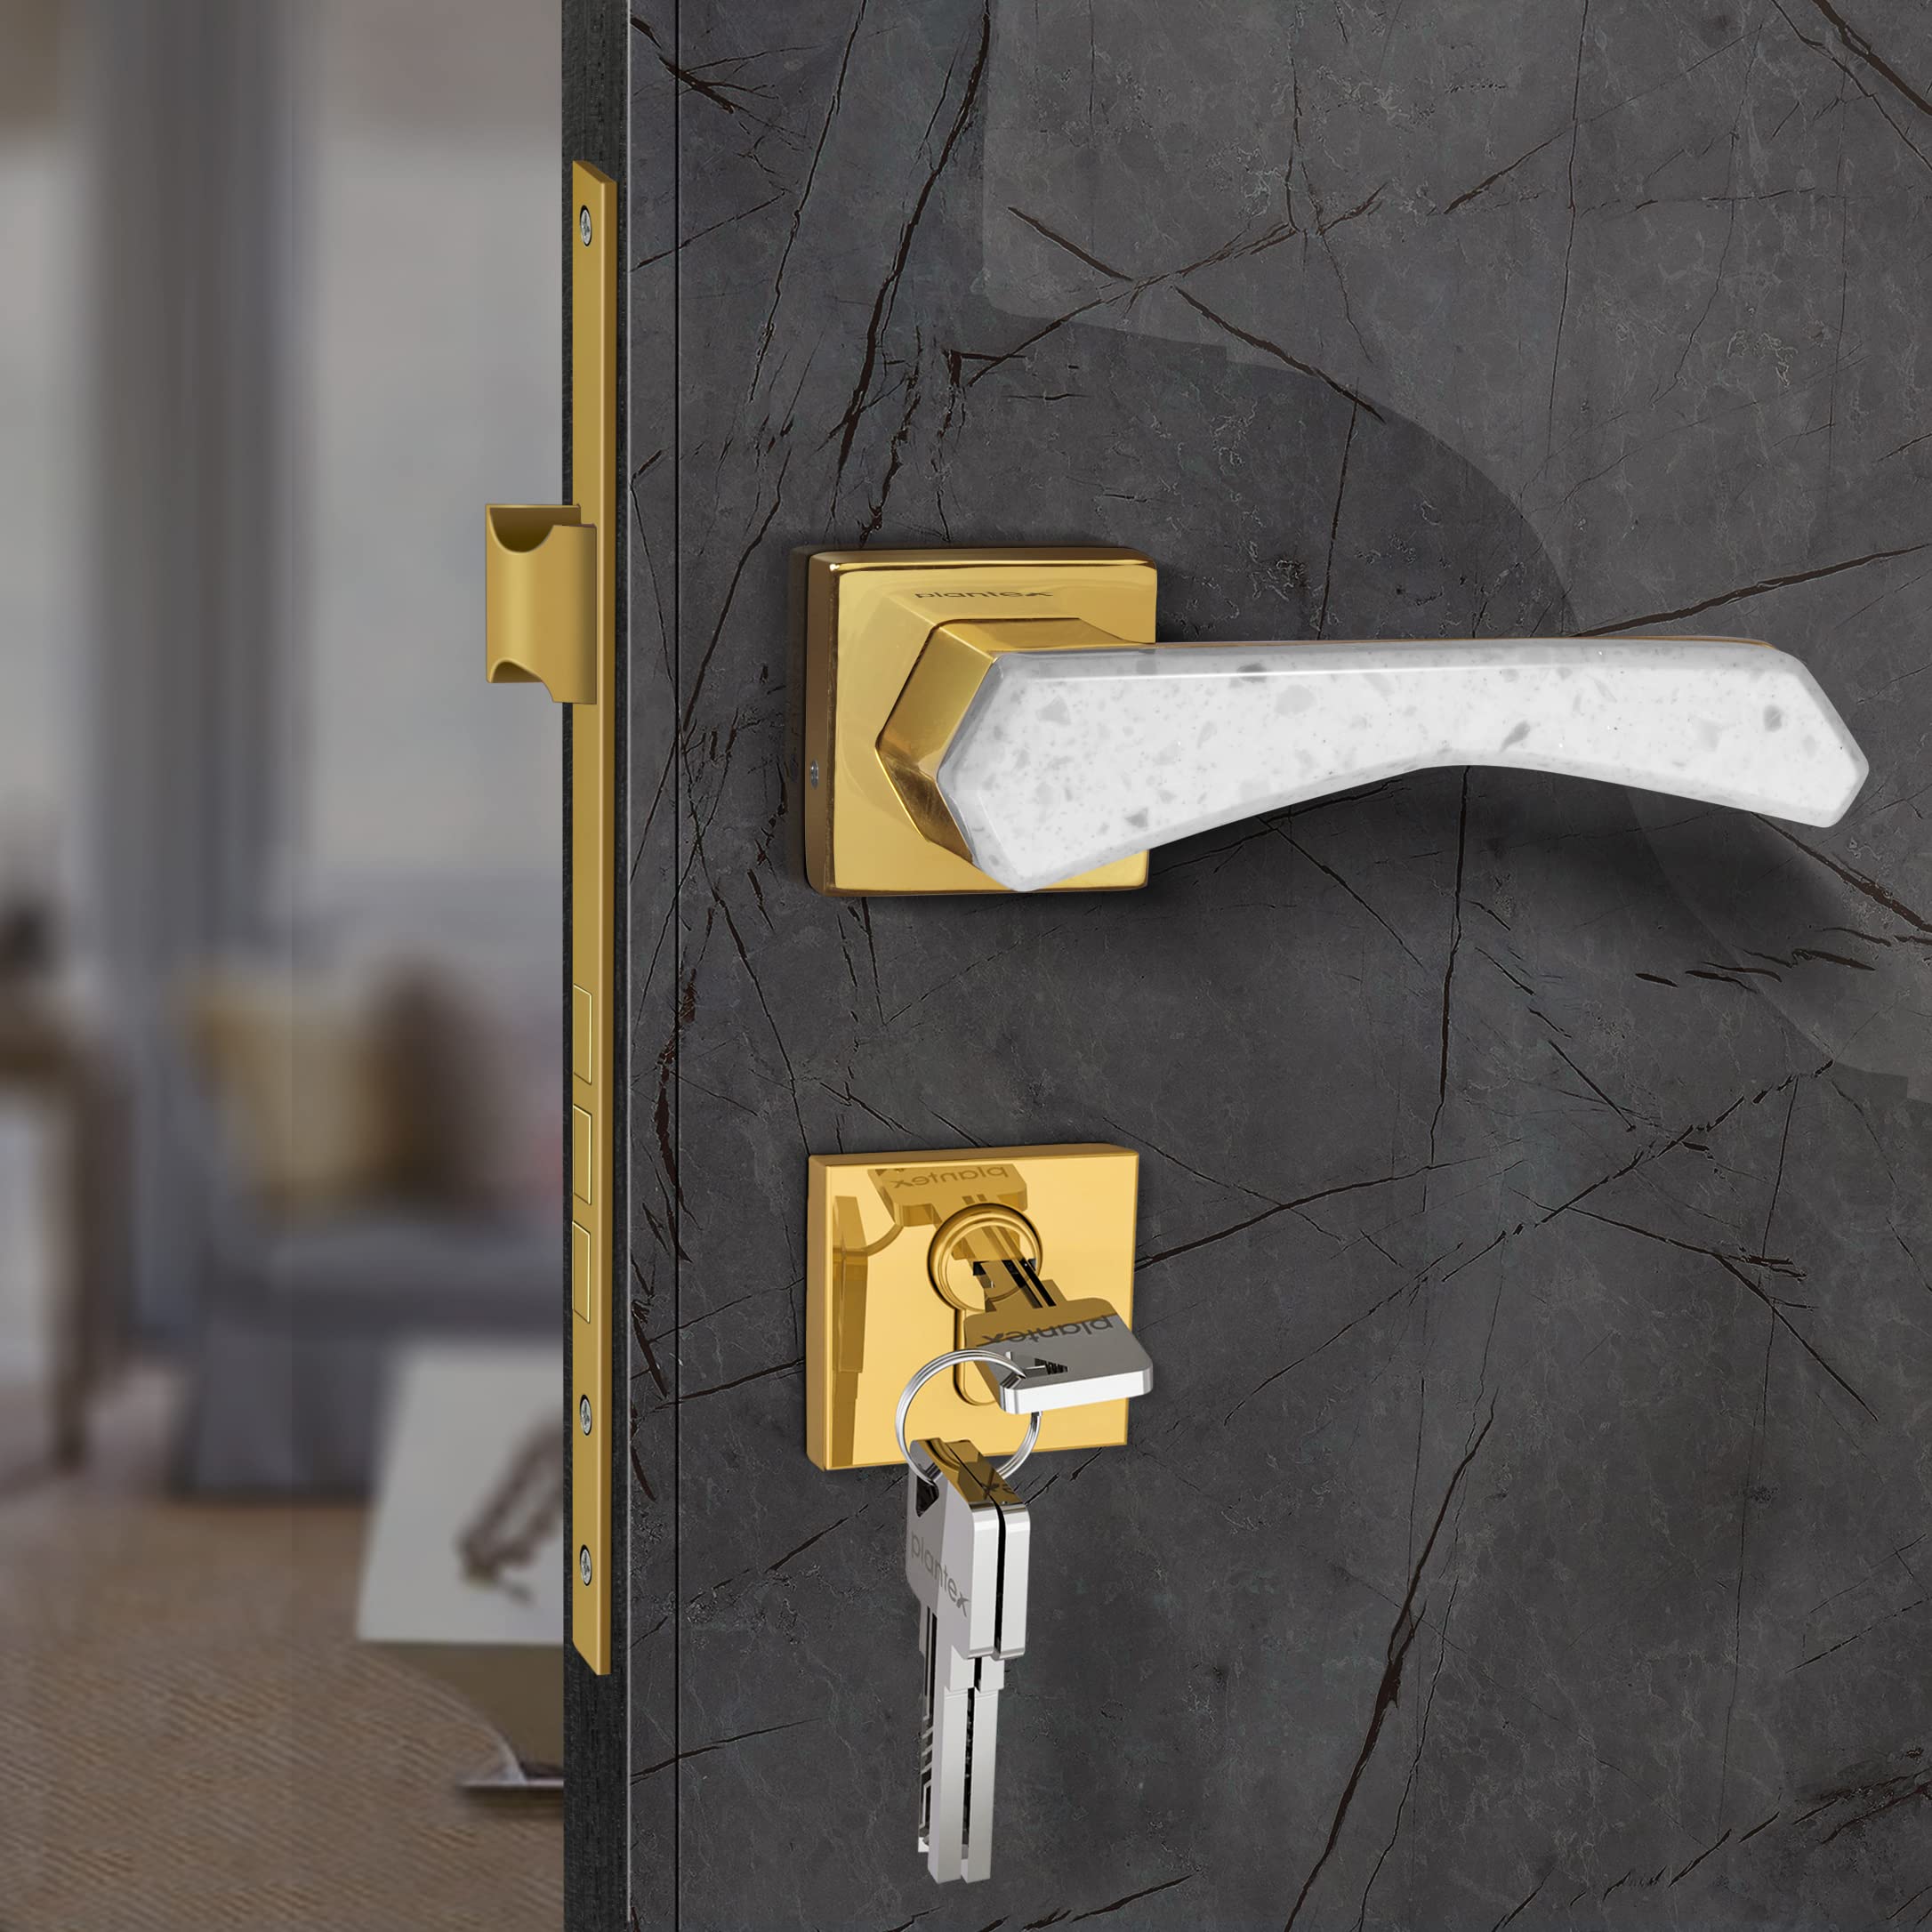 Plantex Heavy Duty Door Lock - Main Door Lock Set with 3 Keys/Mortise Door Lock for Home/Office/Hotel (594 - Gold and White)